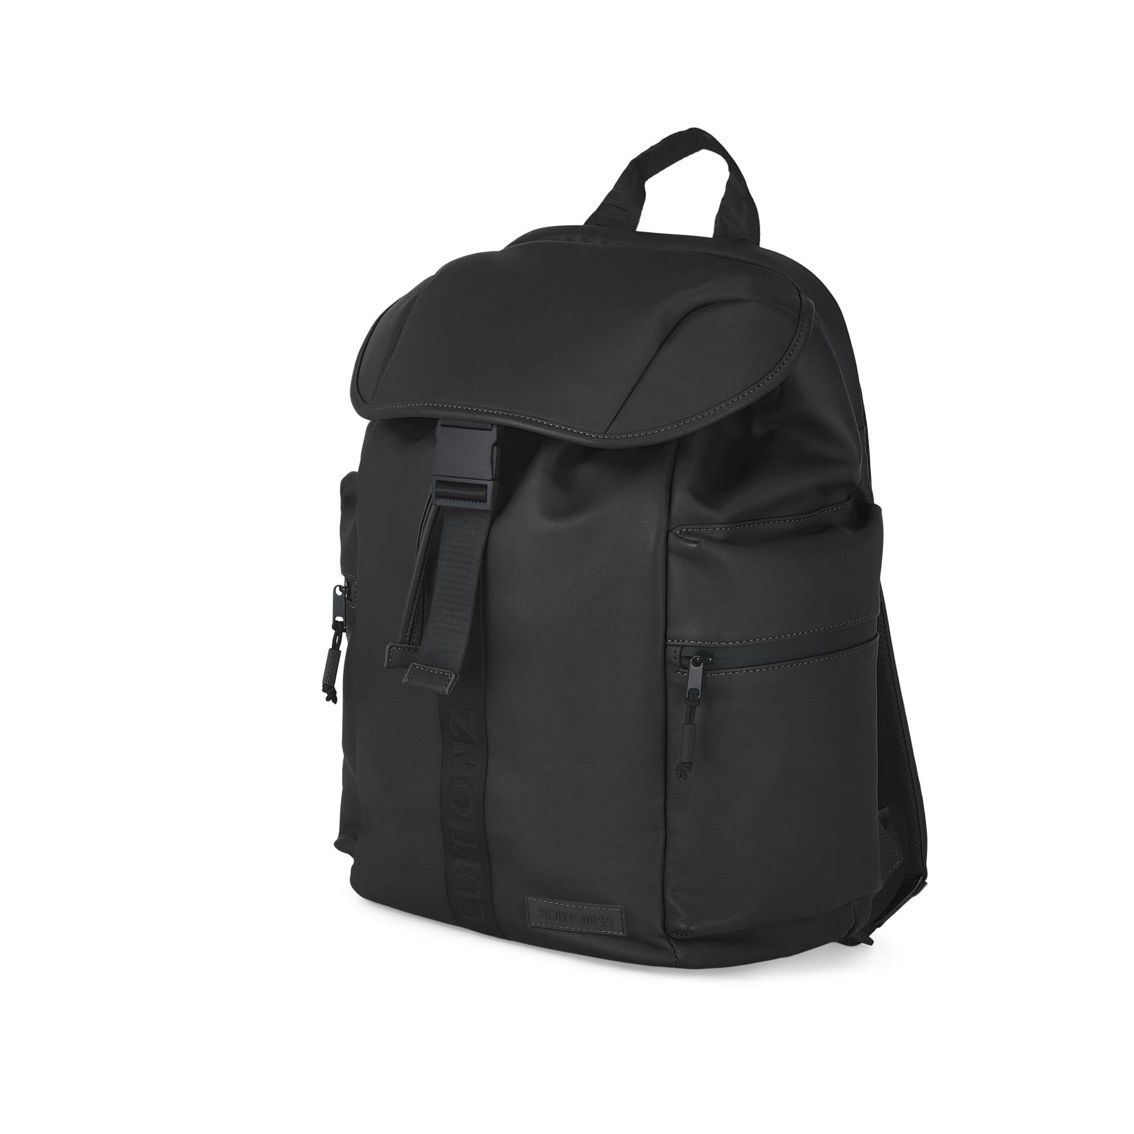 Vision Backpack - Black - Image 2 of 5